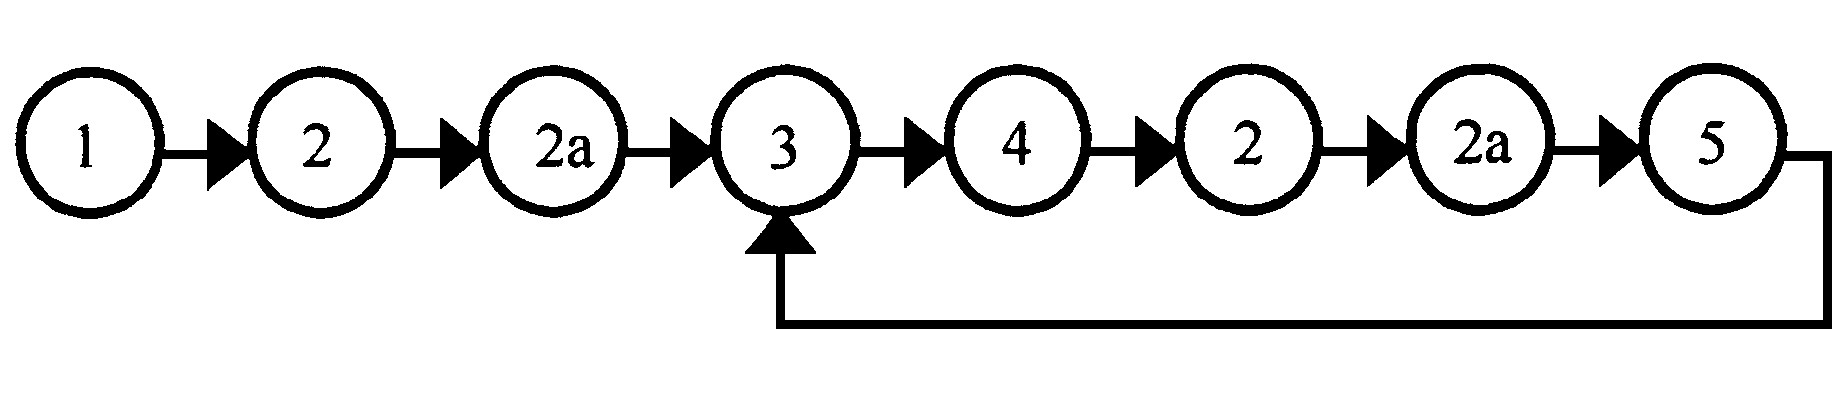 图1 多目标演化算法任务分解图